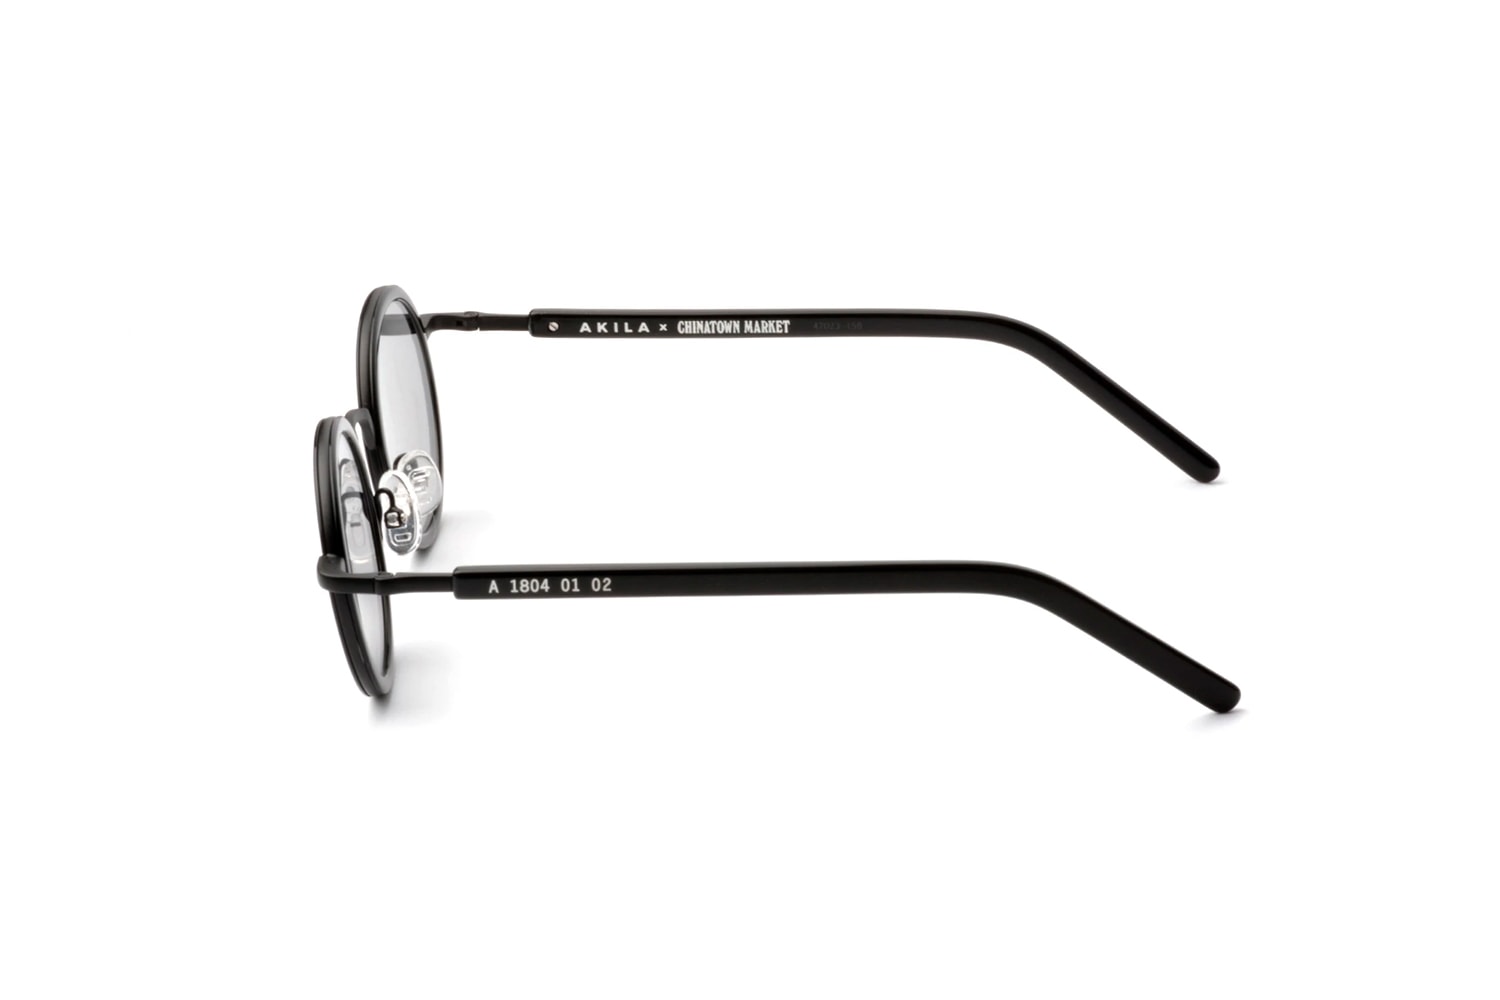 스마일리 페이스 렌즈, 차이나타운 마켓 x 아킬라 선글라스 협업 Ethos 컬렉션